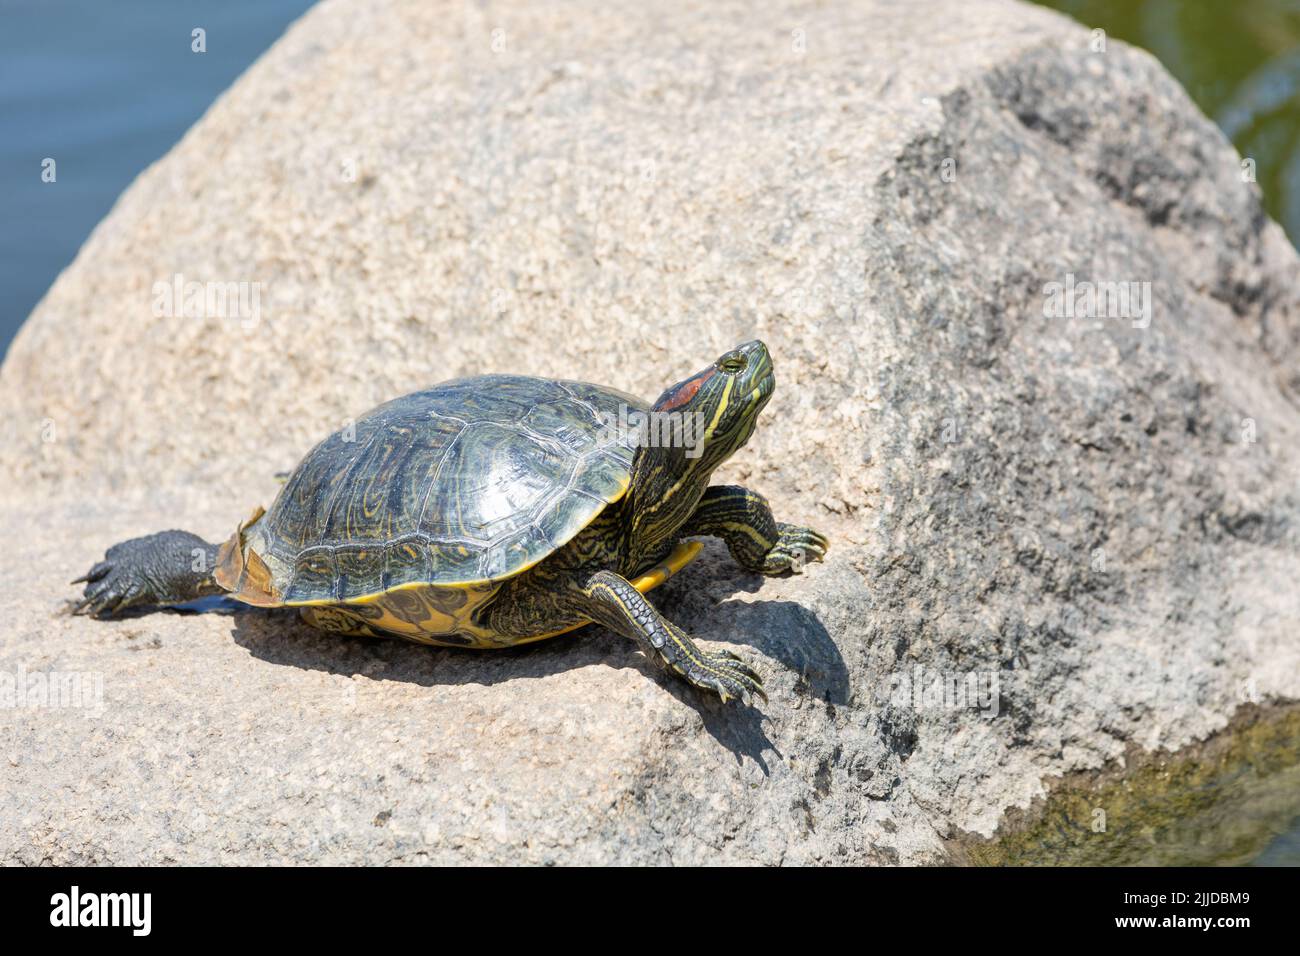 Painter turtle sunning itself on a rock Stock Photo